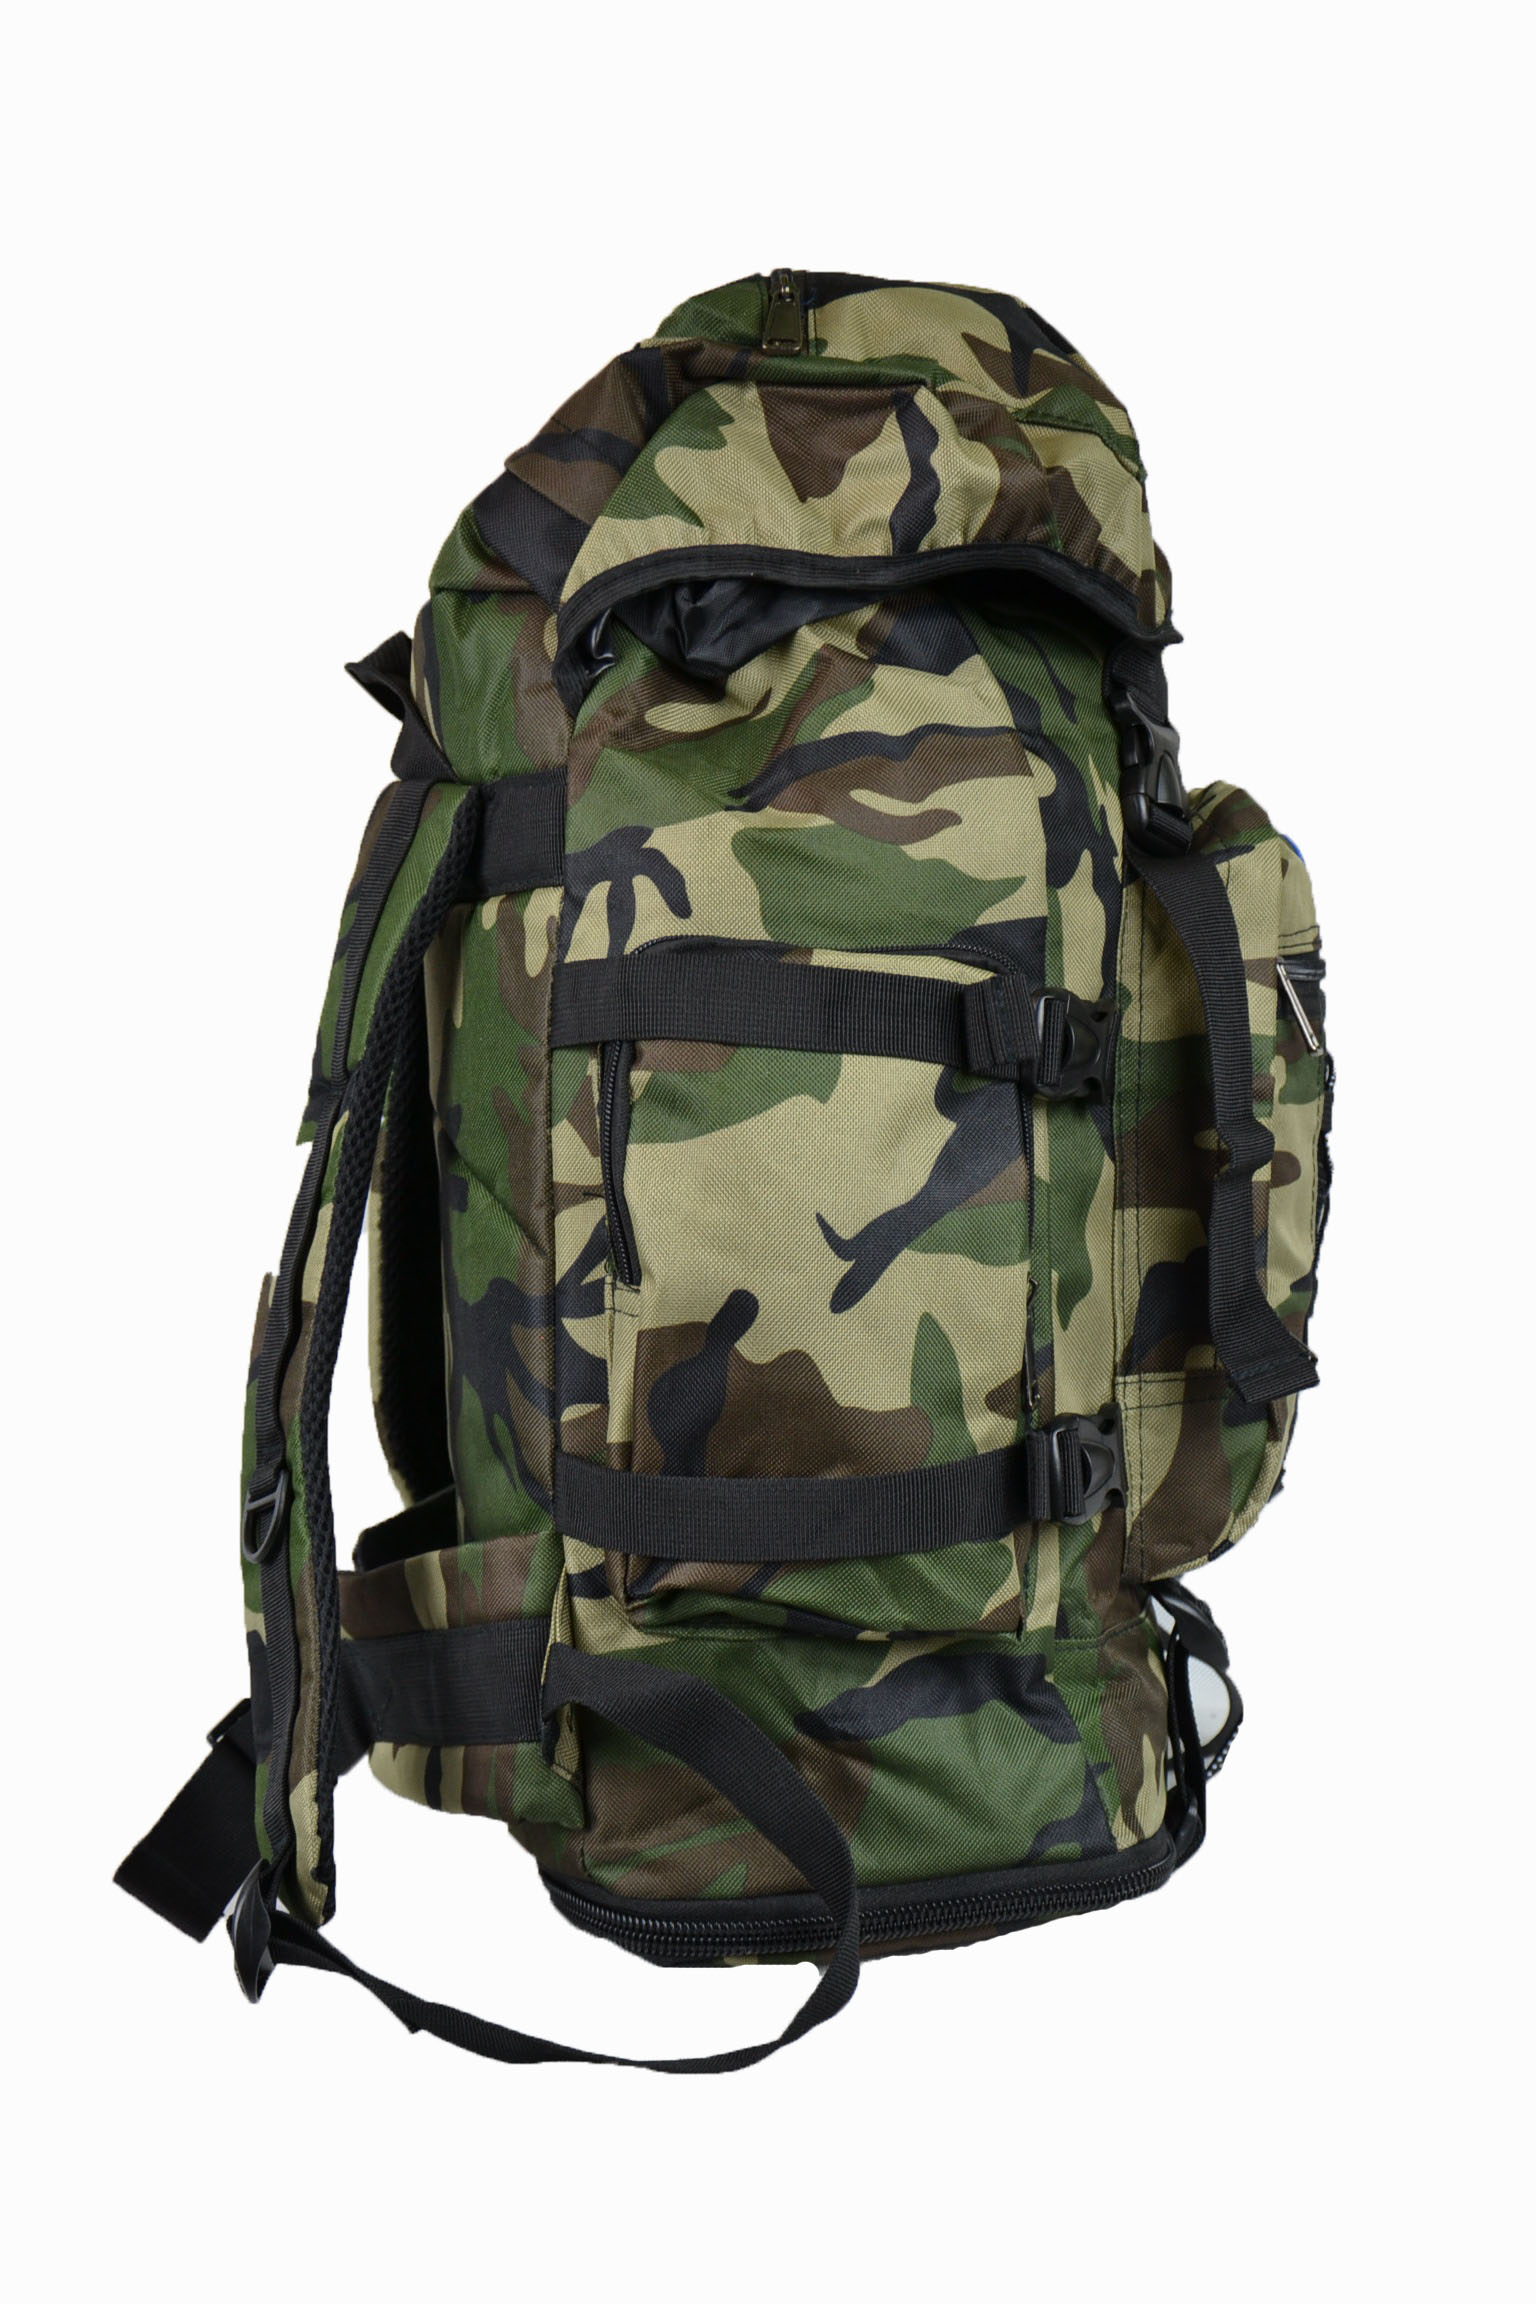 Армейский походный. Рюкзак рыбалка олива 80 литров ус-рюк110-800-4. Военный рюкзак. Рюкзаки походные армейские. Тактический рюкзак вид сбоку.